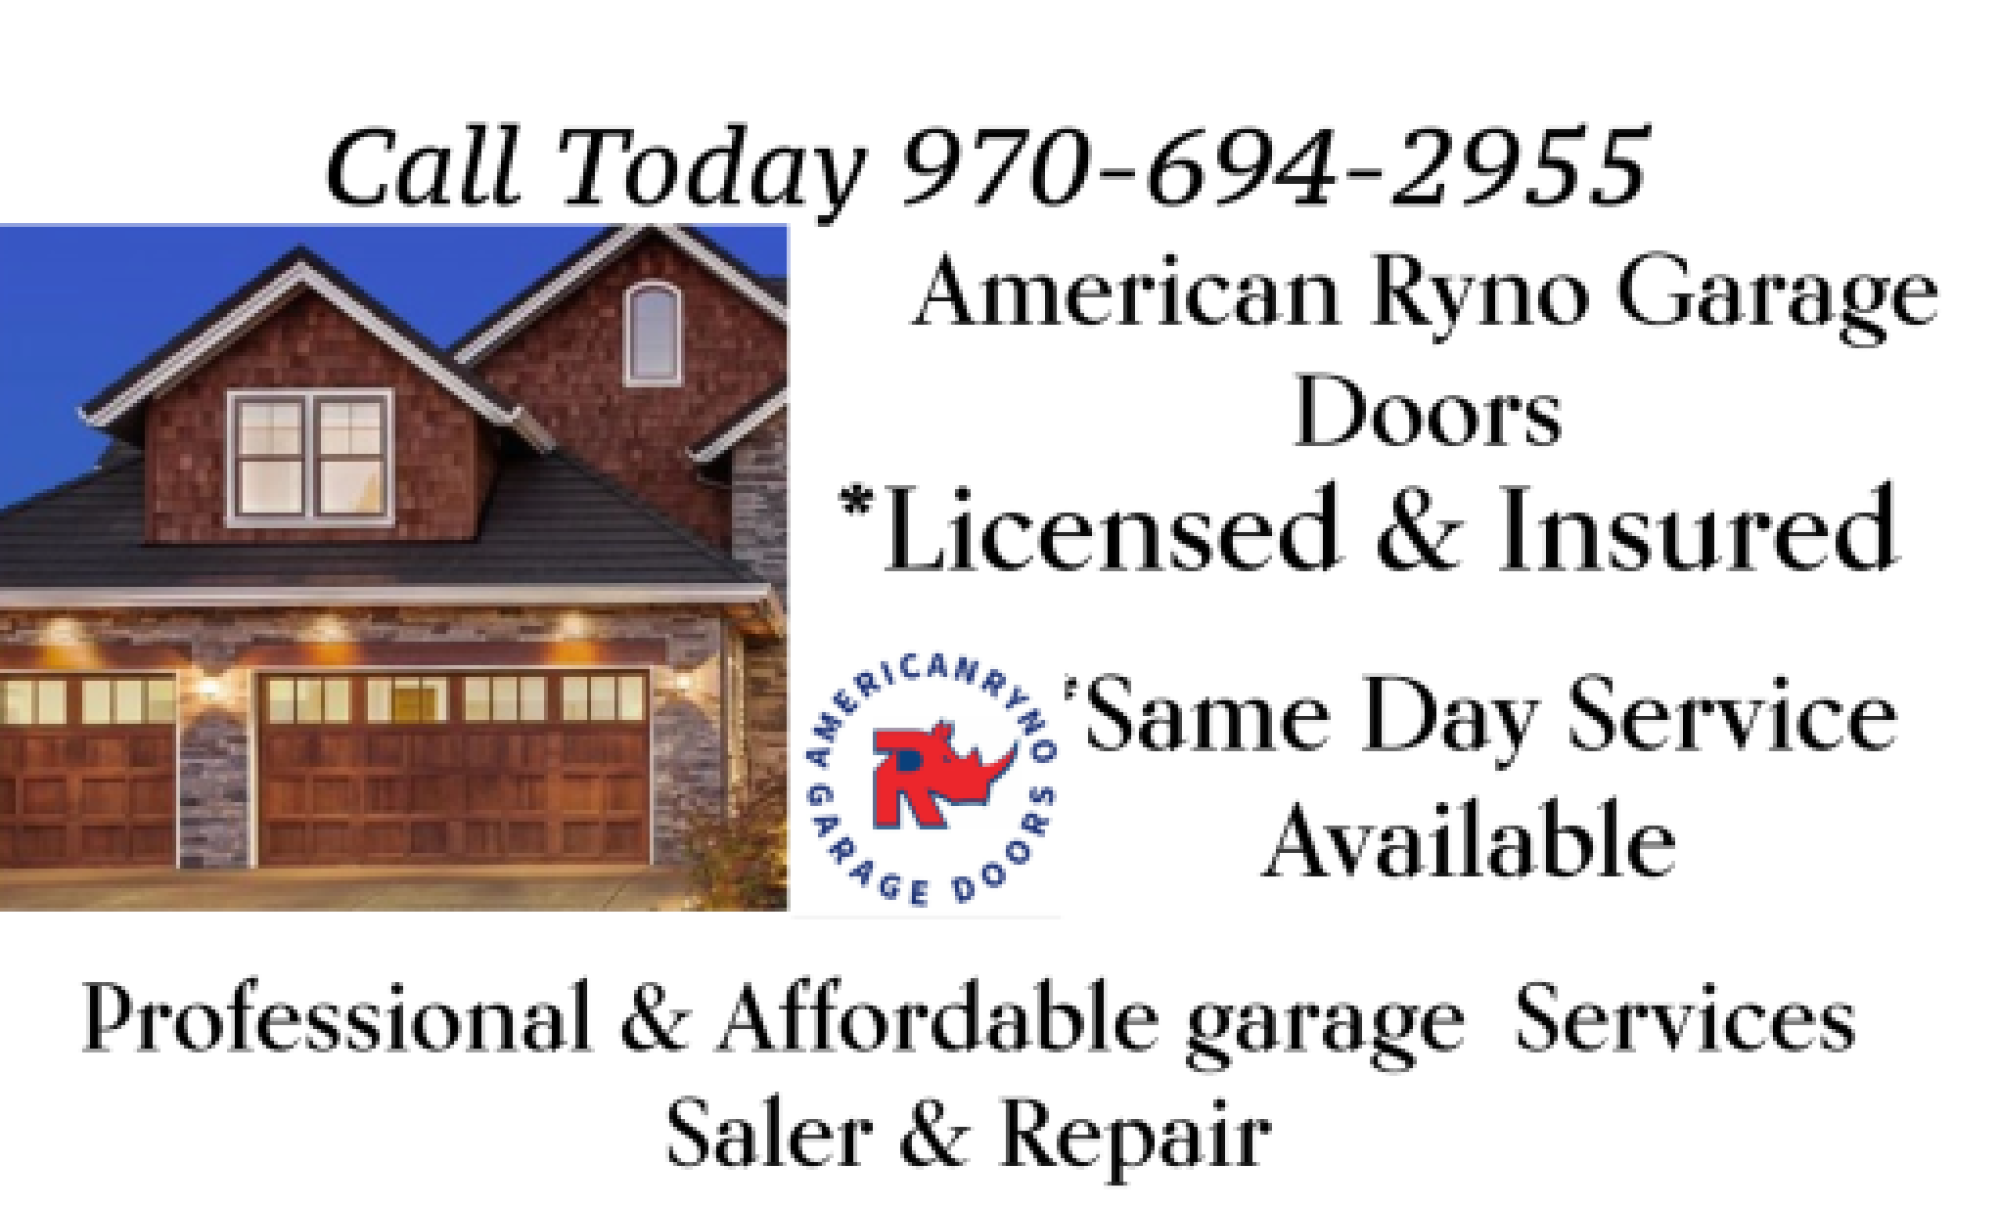 American Ryno Garage Doors